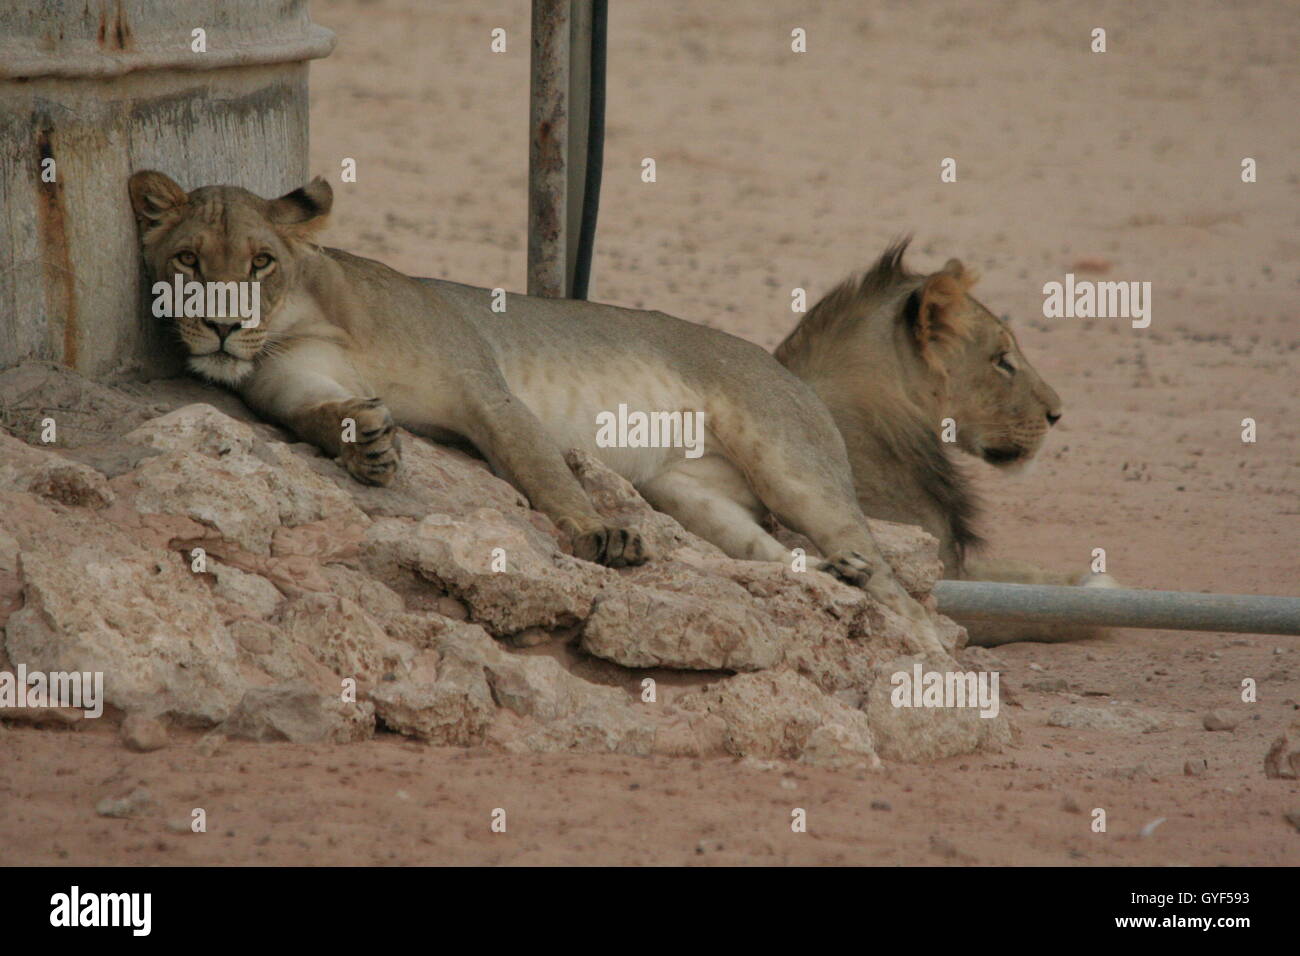 Eine Löwin blickte direkt in das Objektiv meiner Kamera, ein Porträt von zwei jungen Löwen gefangen genommen. Stockfoto